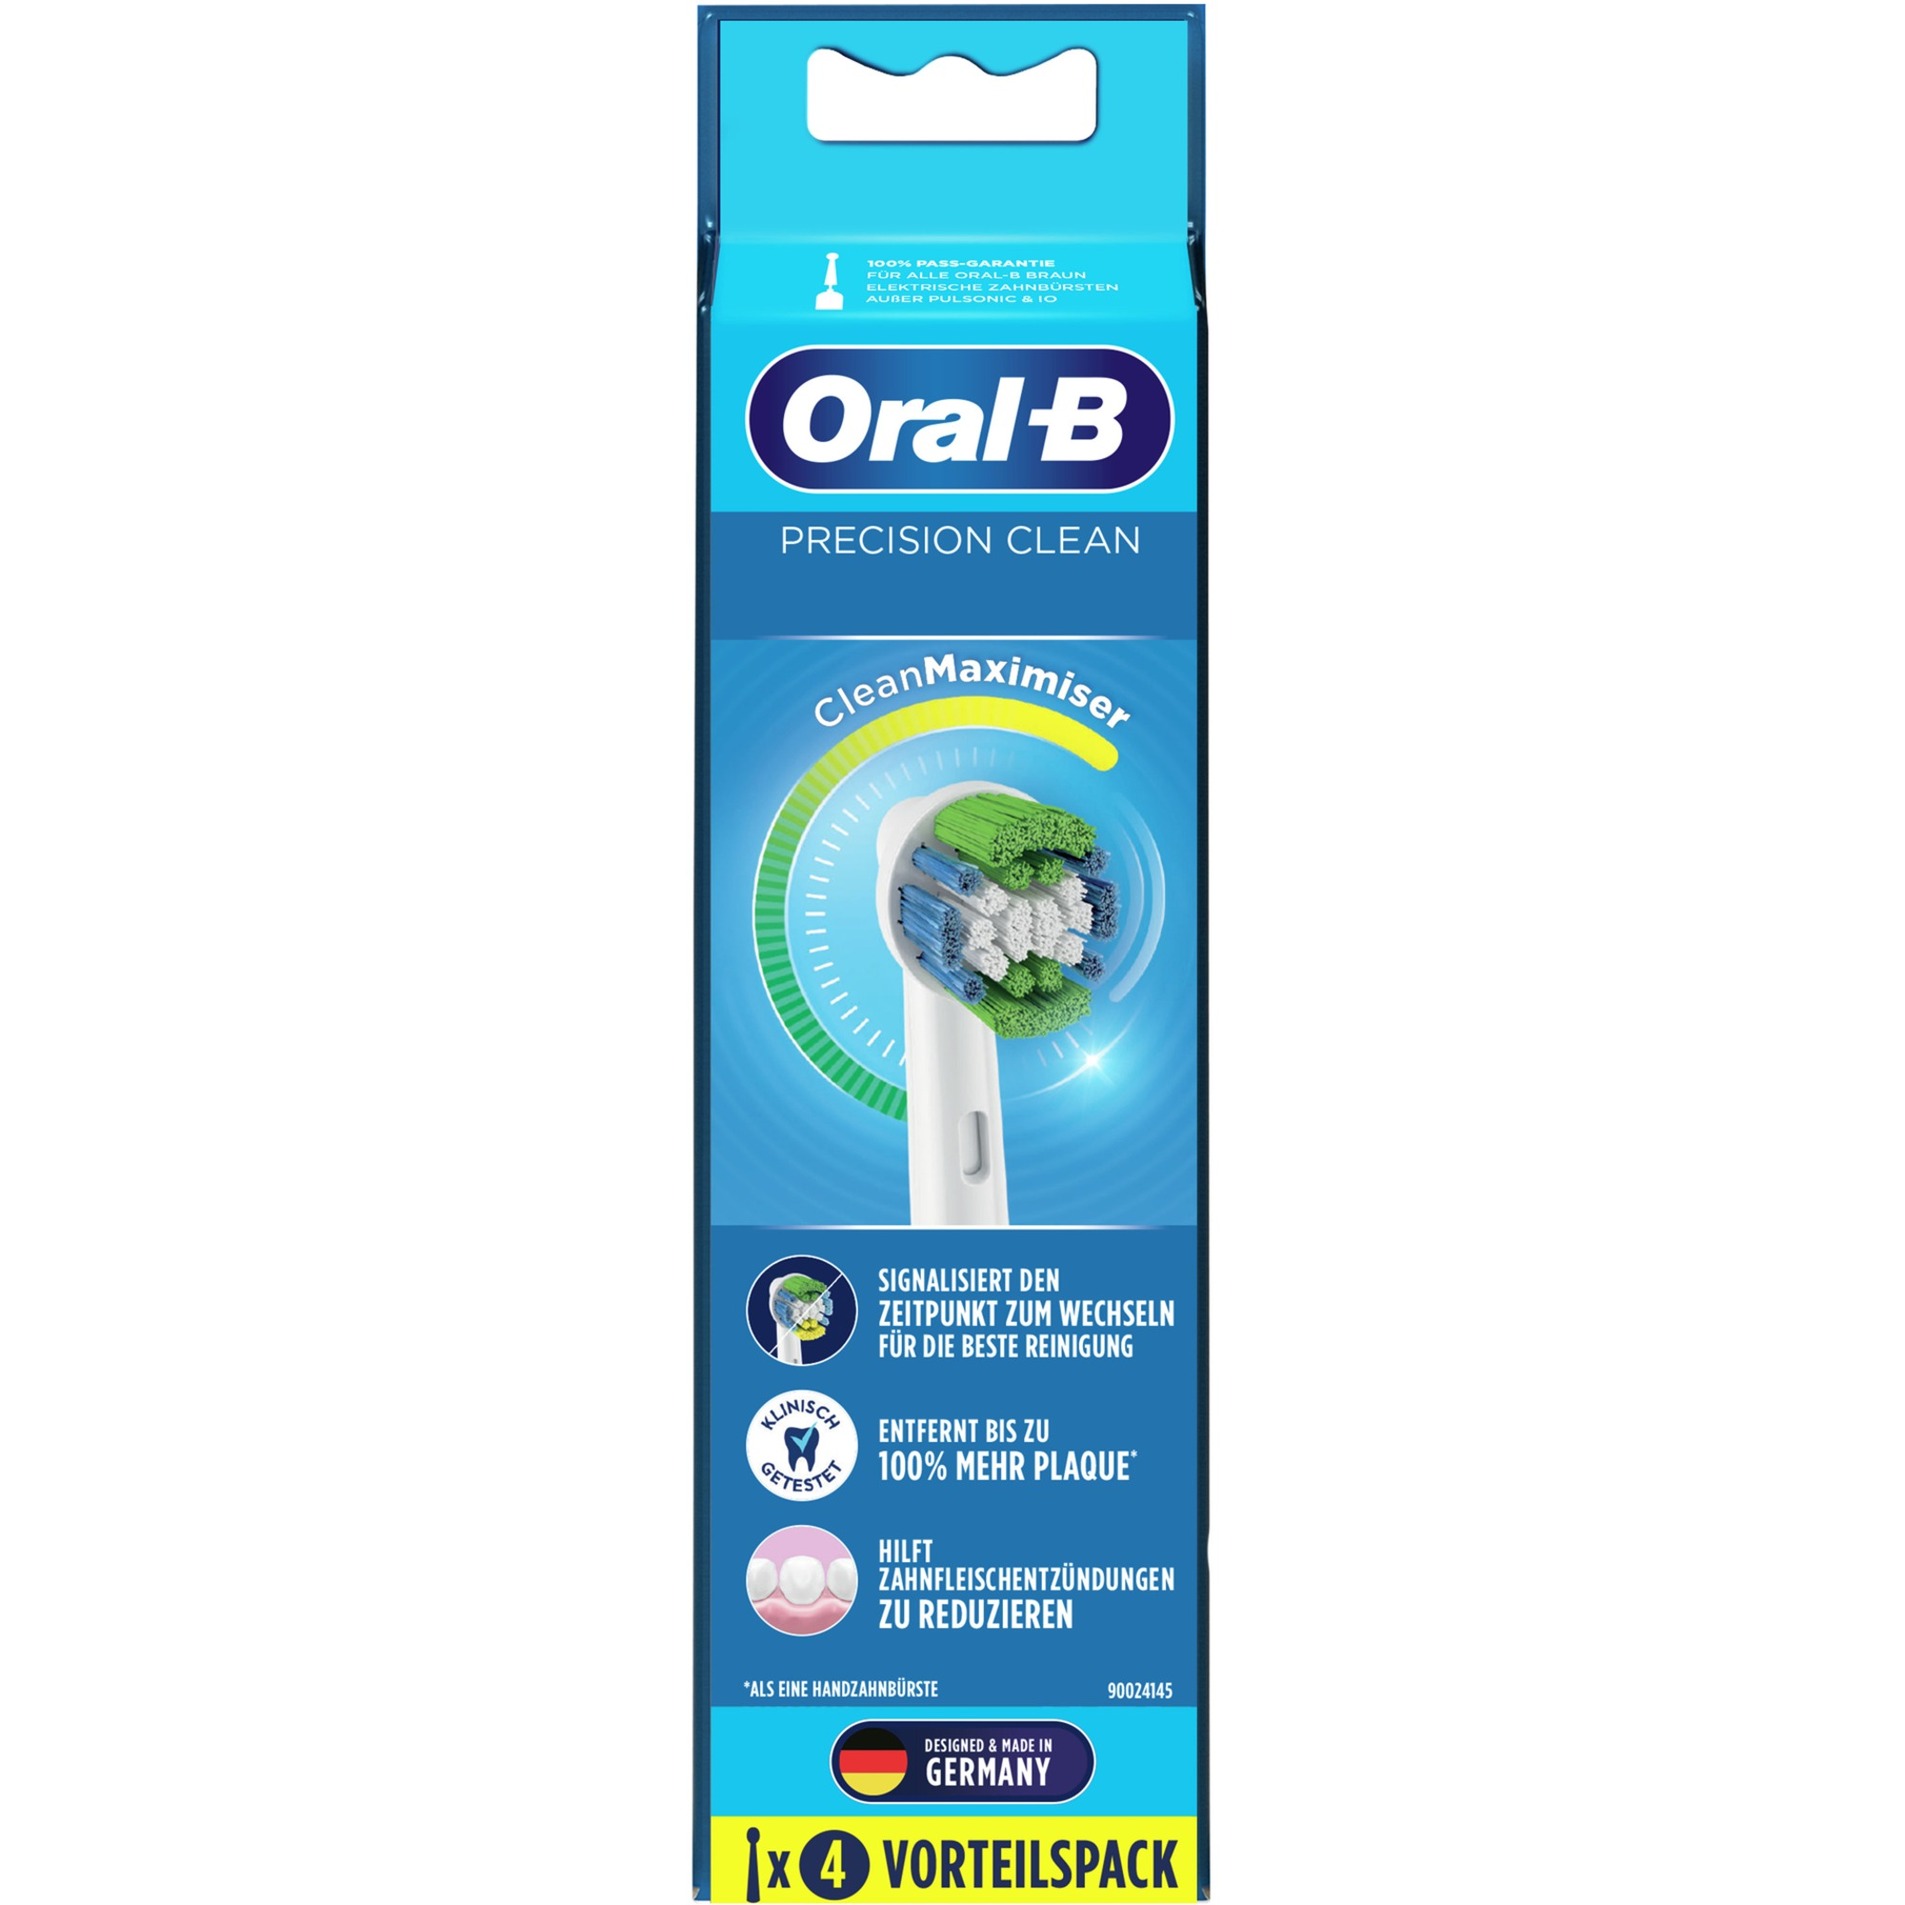 Image of Alternate - Oral-B Precision Clean CleanMaximiser 4er, Aufsteckbürste online einkaufen bei Alternate